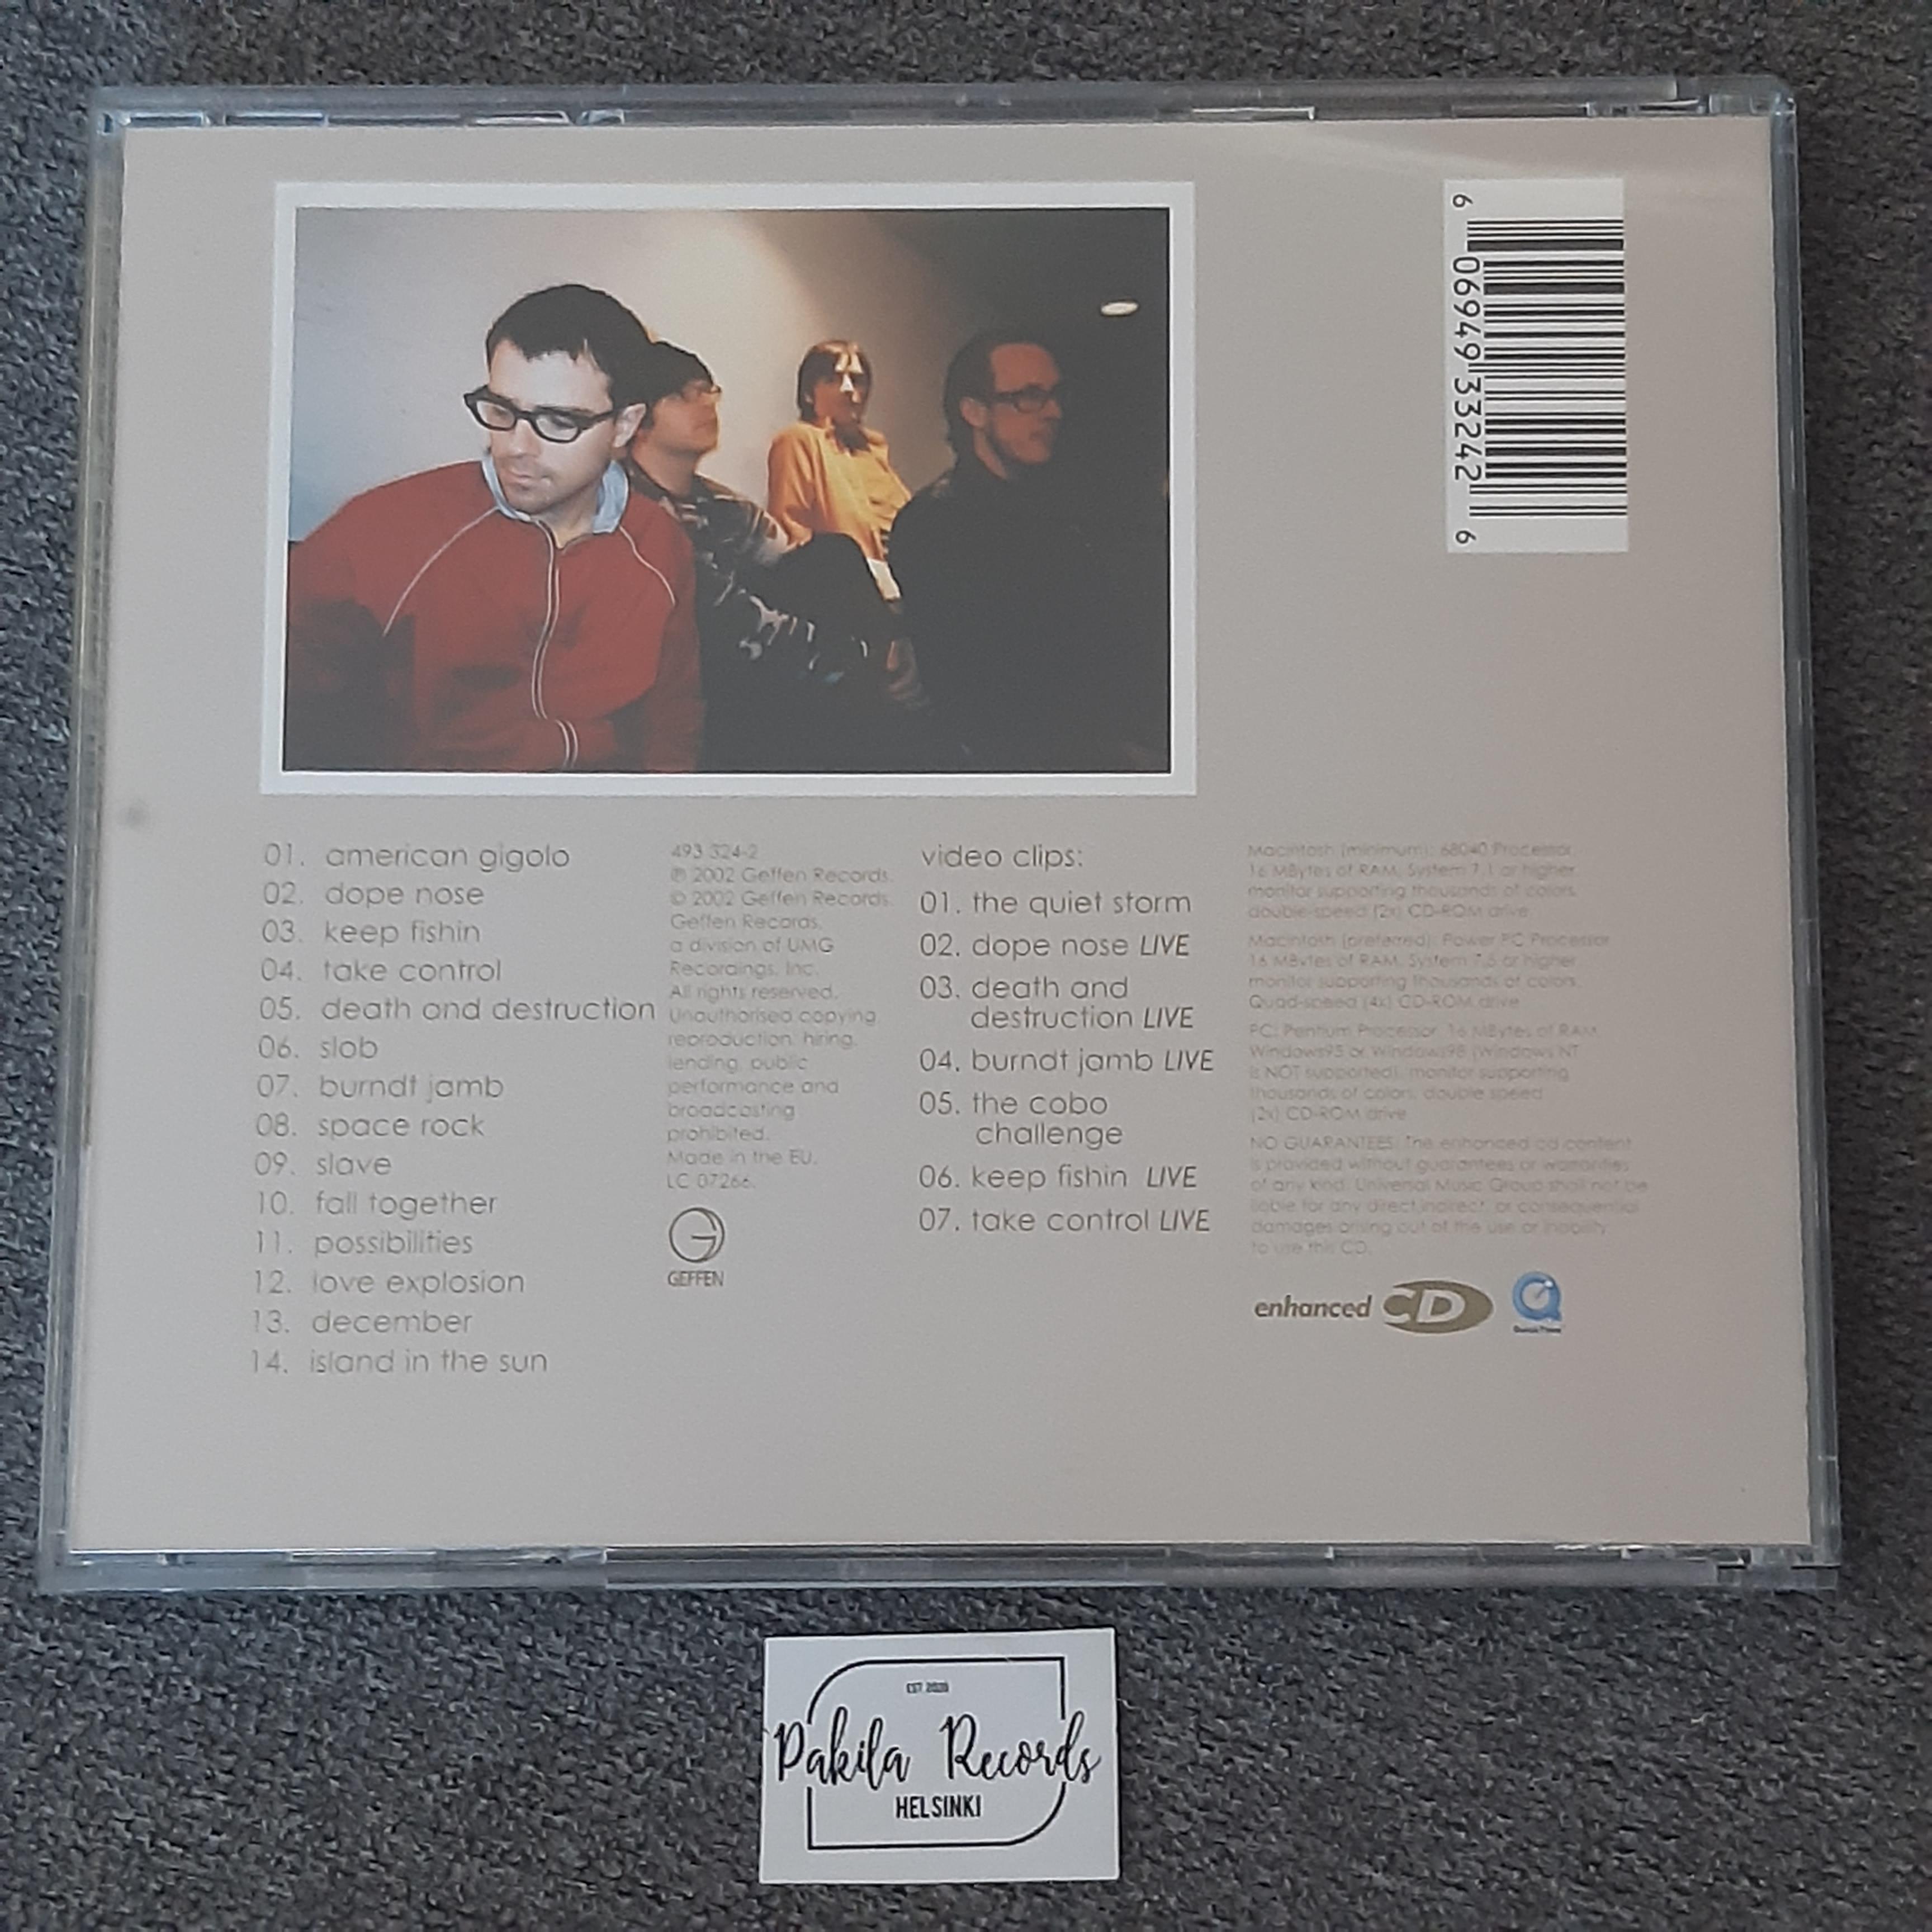 Weezer - Maladroit - CD (käytetty)